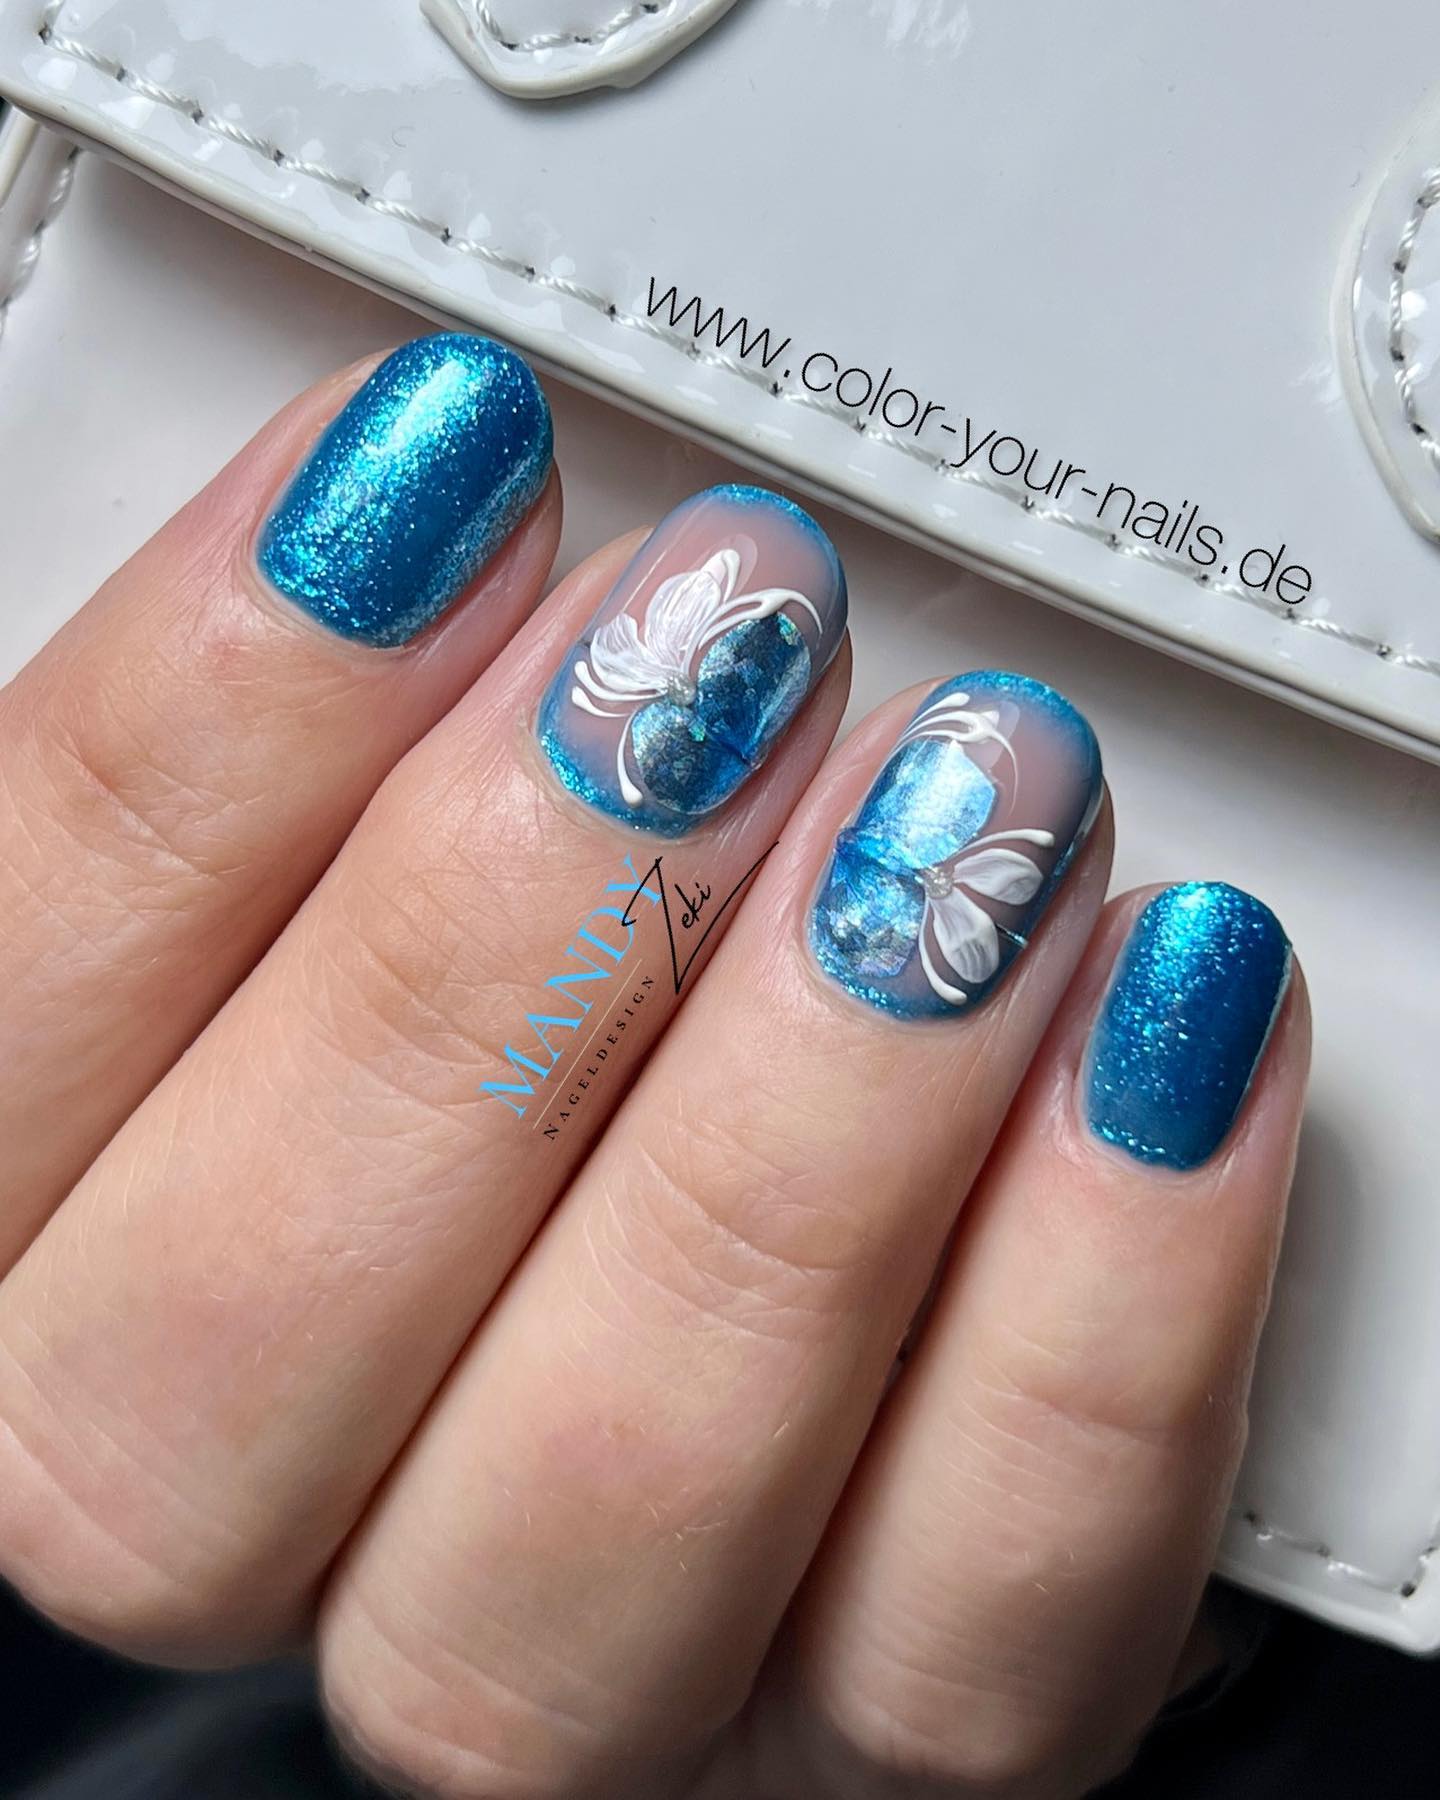 Las uñas con brillantina azul siempre están ahí para que brilles como un diamante.  Para llevar estas uñas a un nivel diferente, aplicar un arte de uñas floral para uñas decorativas suena increíble, ¿no?